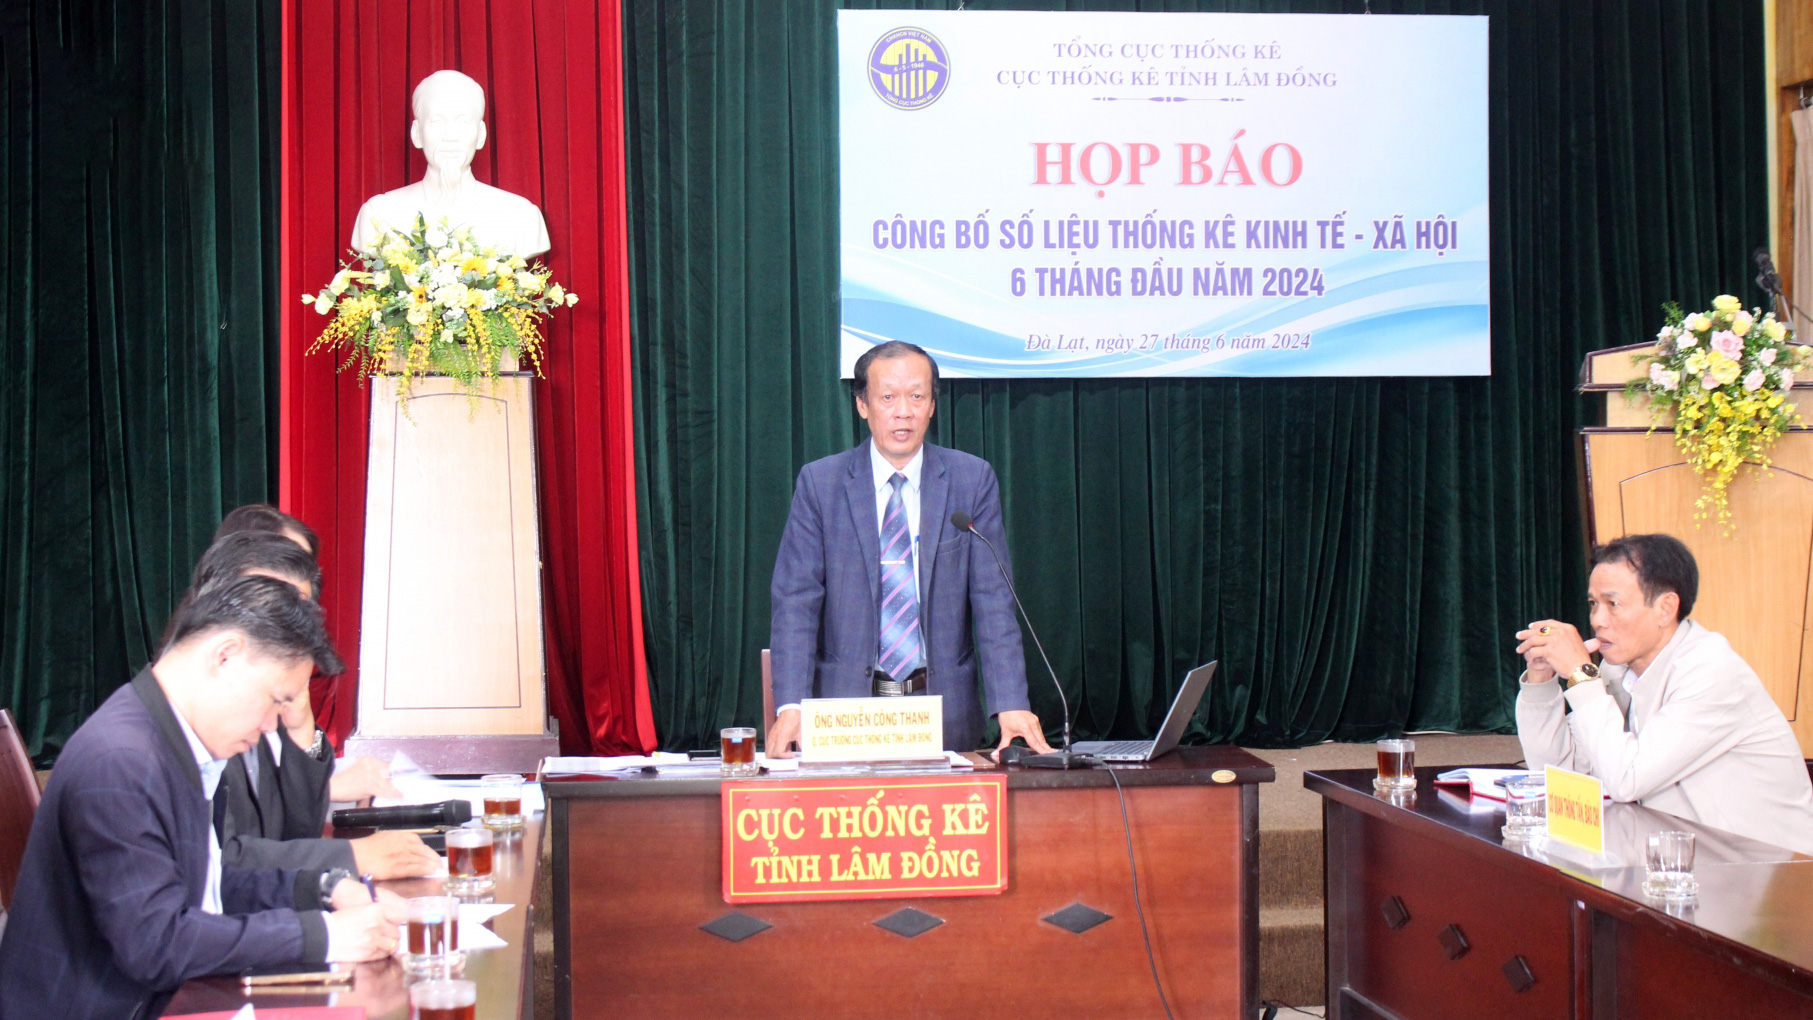 GRDP 6 tháng đầu năm 2024 tỉnh Lâm Đồng tăng 2,97%